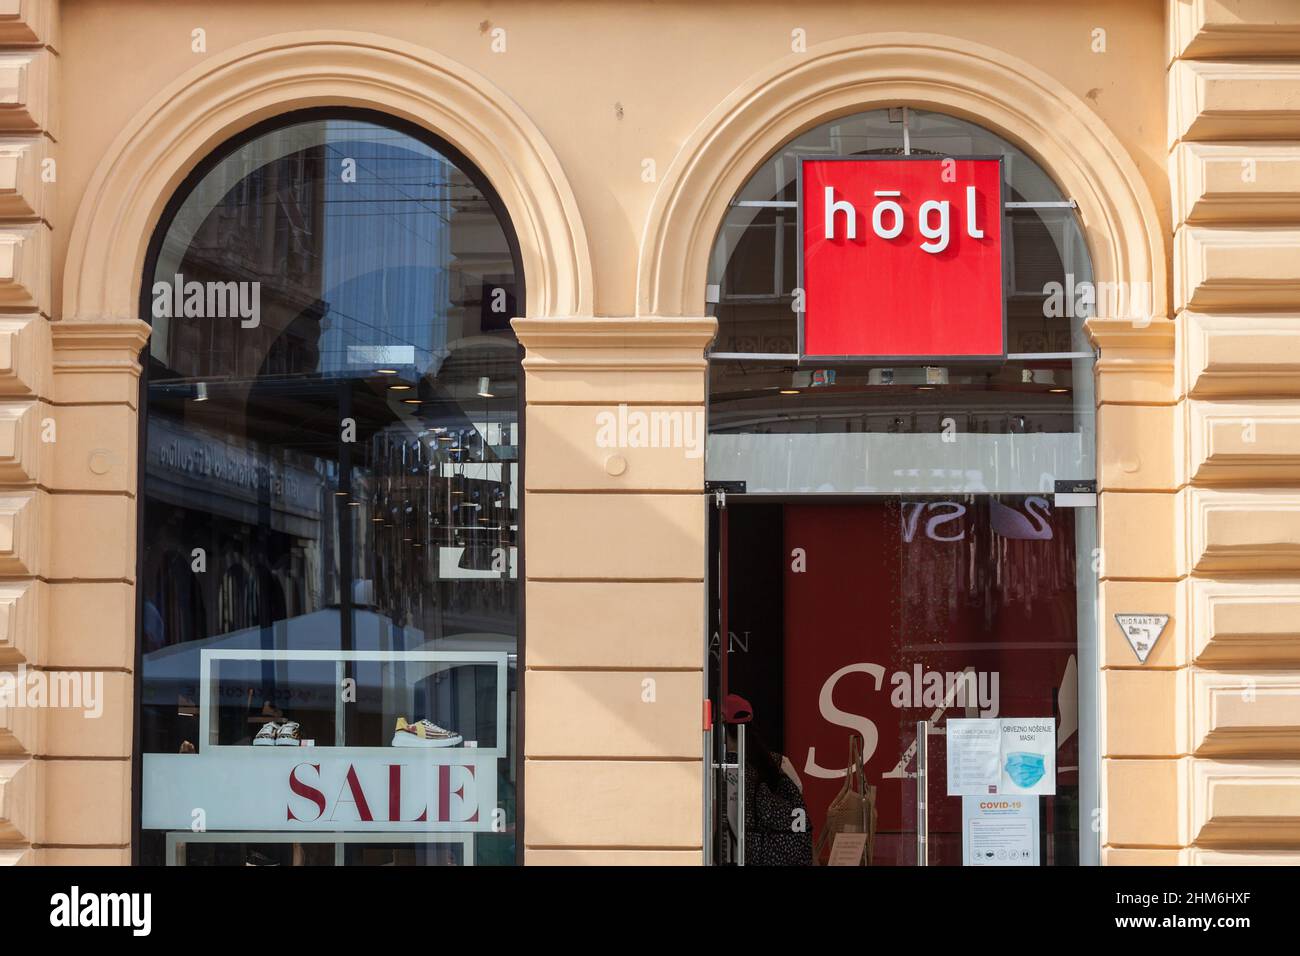 Photo d'un signe avec le logo des chaussures Hogl sur leur boutique locale pour Zagreb, Croatie. Hoegl est une multinationale autrichienne de chaussures et accessoires de mode Banque D'Images